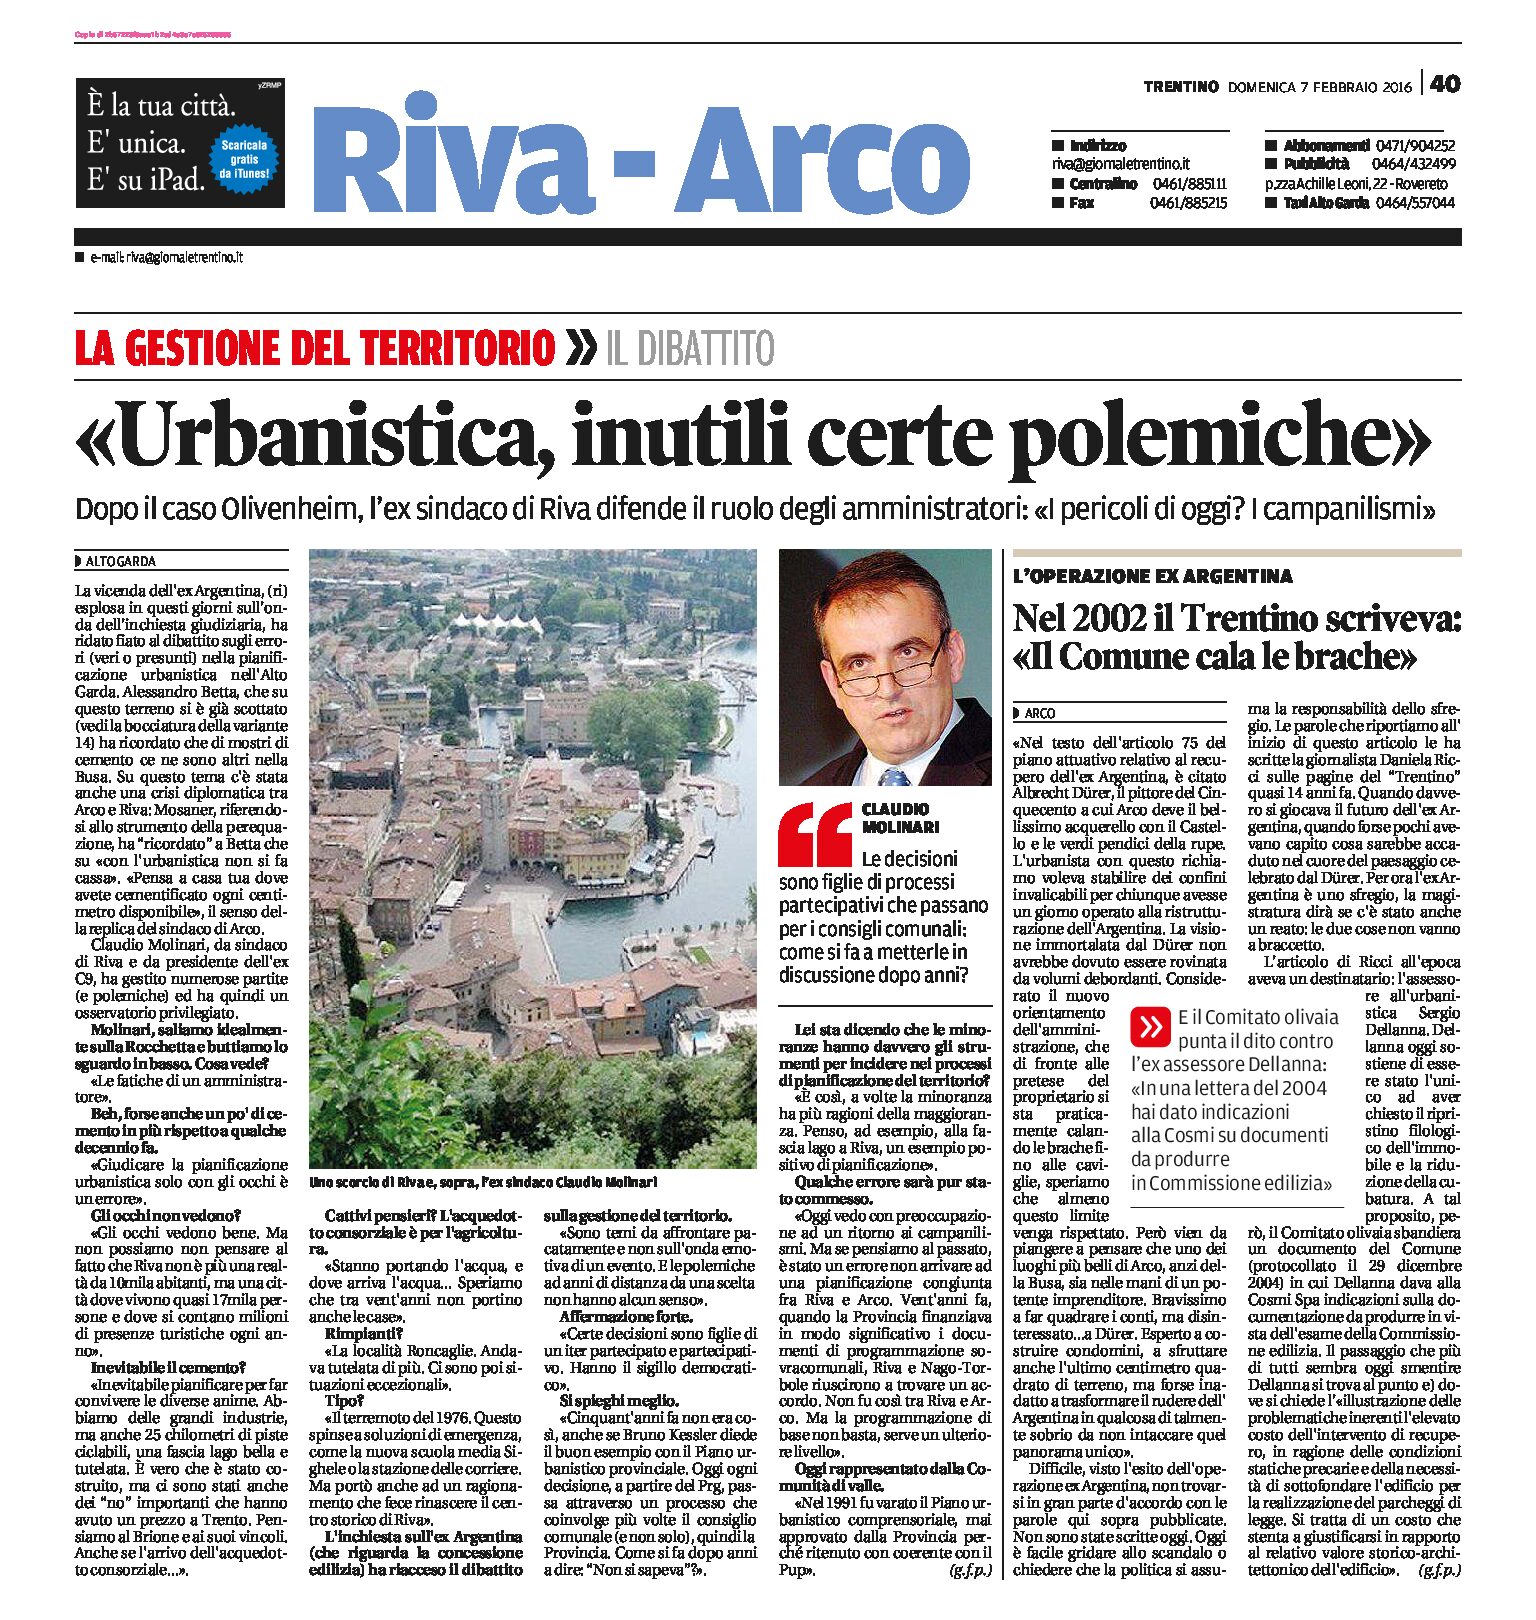 Arco, Olivenheim: intervista all’ex sindaco di Riva. Il Comitato olivaia e la lettera del 2004